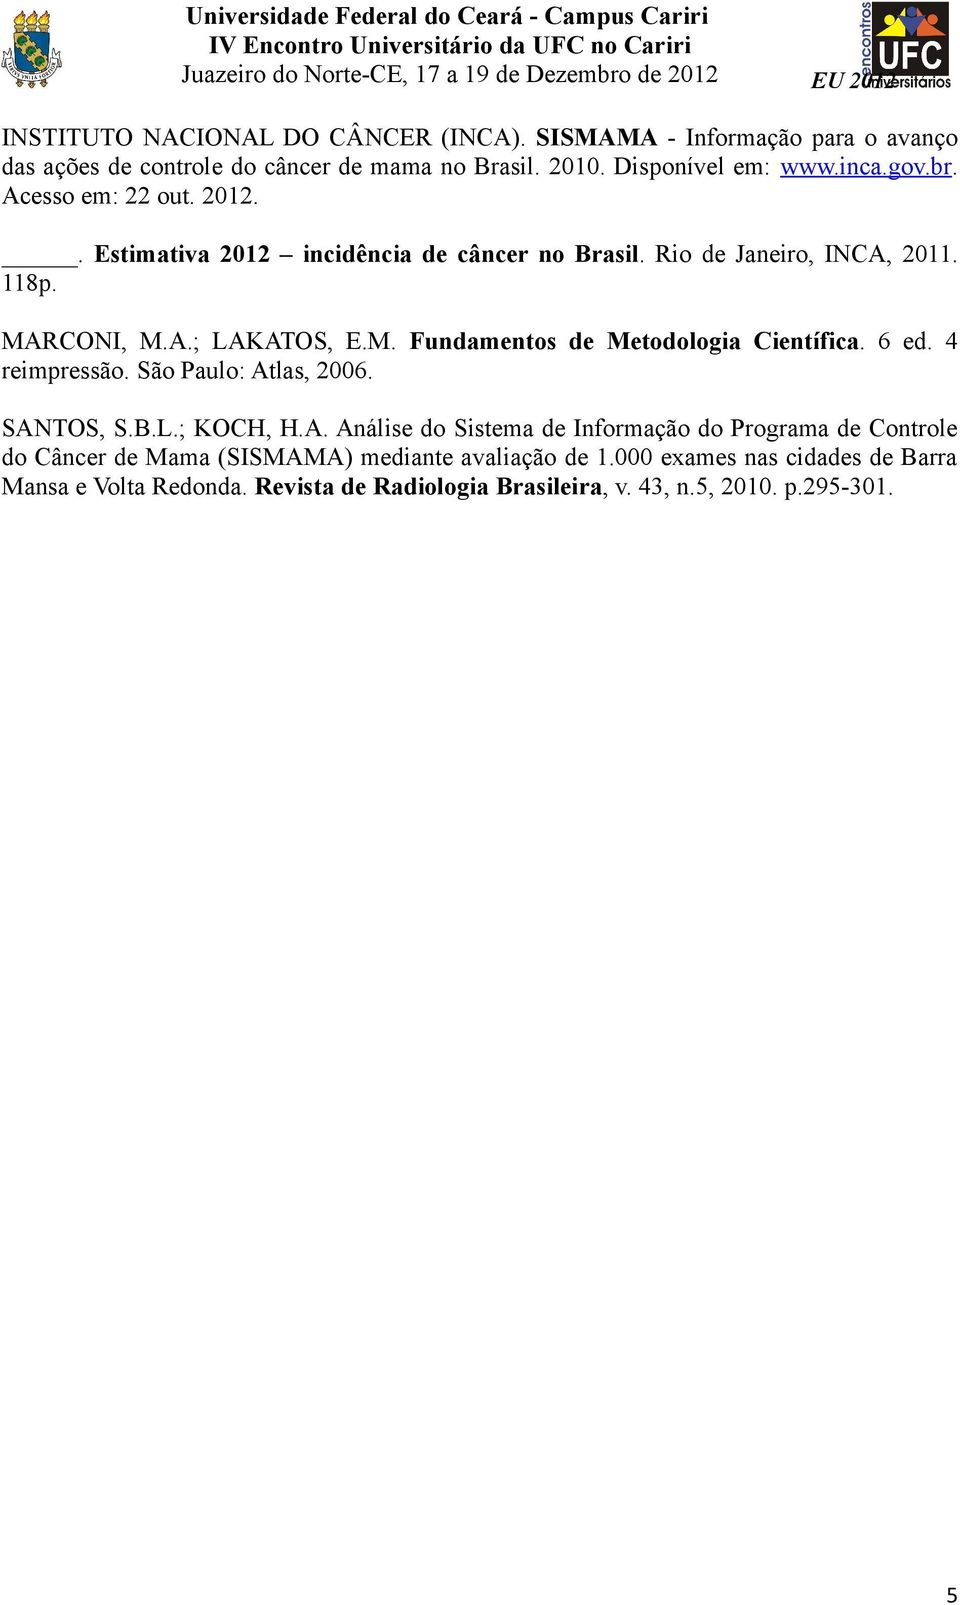 6 ed. 4 reimpressão. São Paulo: Atlas, 2006. SANTOS, S.B.L.; KOCH, H.A. Análise do Sistema de Informação do Programa de Controle do Câncer de Mama (SISMAMA) mediante avaliação de 1.